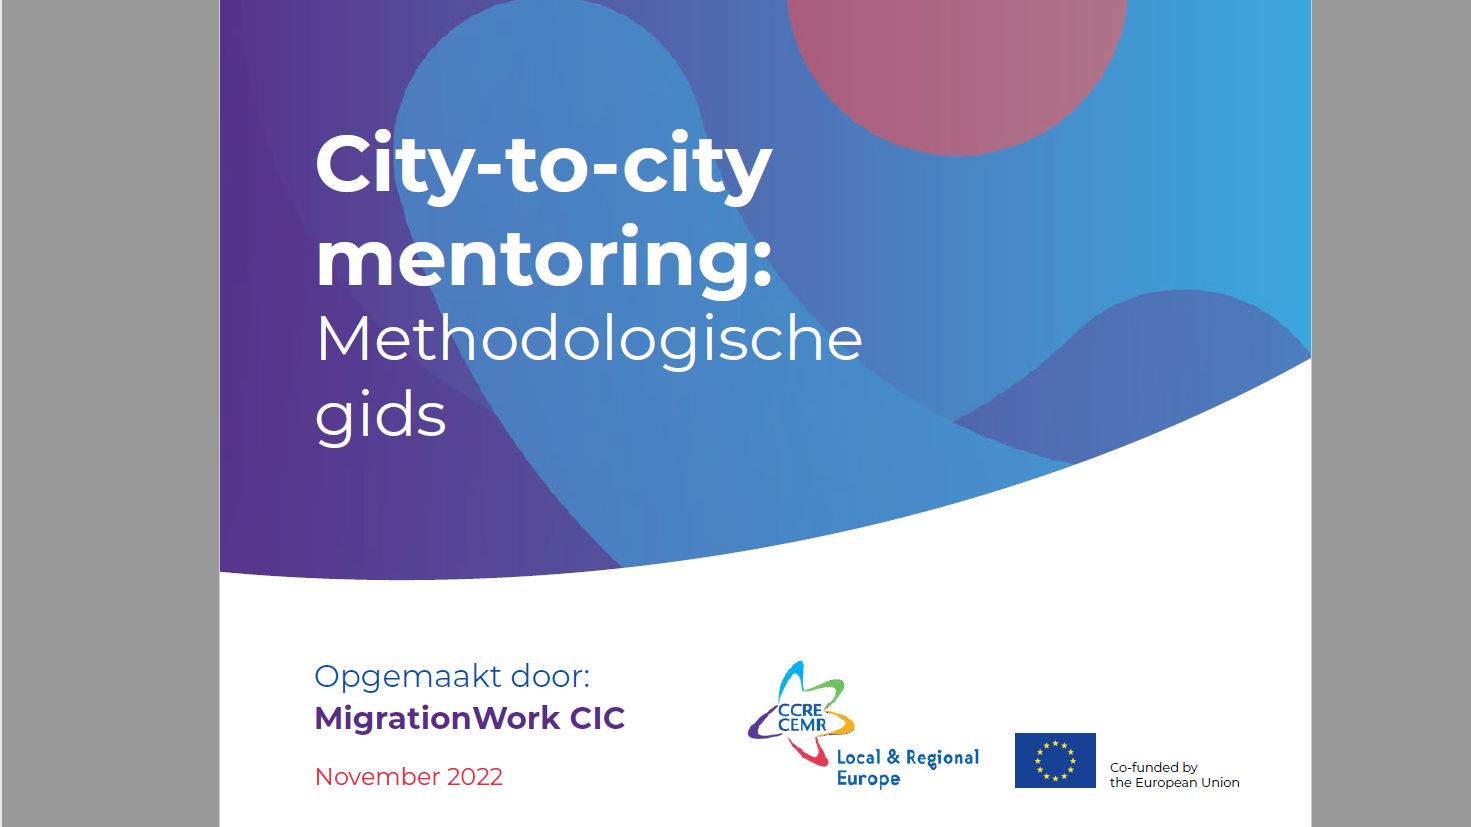 City-to-city mentoring: Methodologische gids